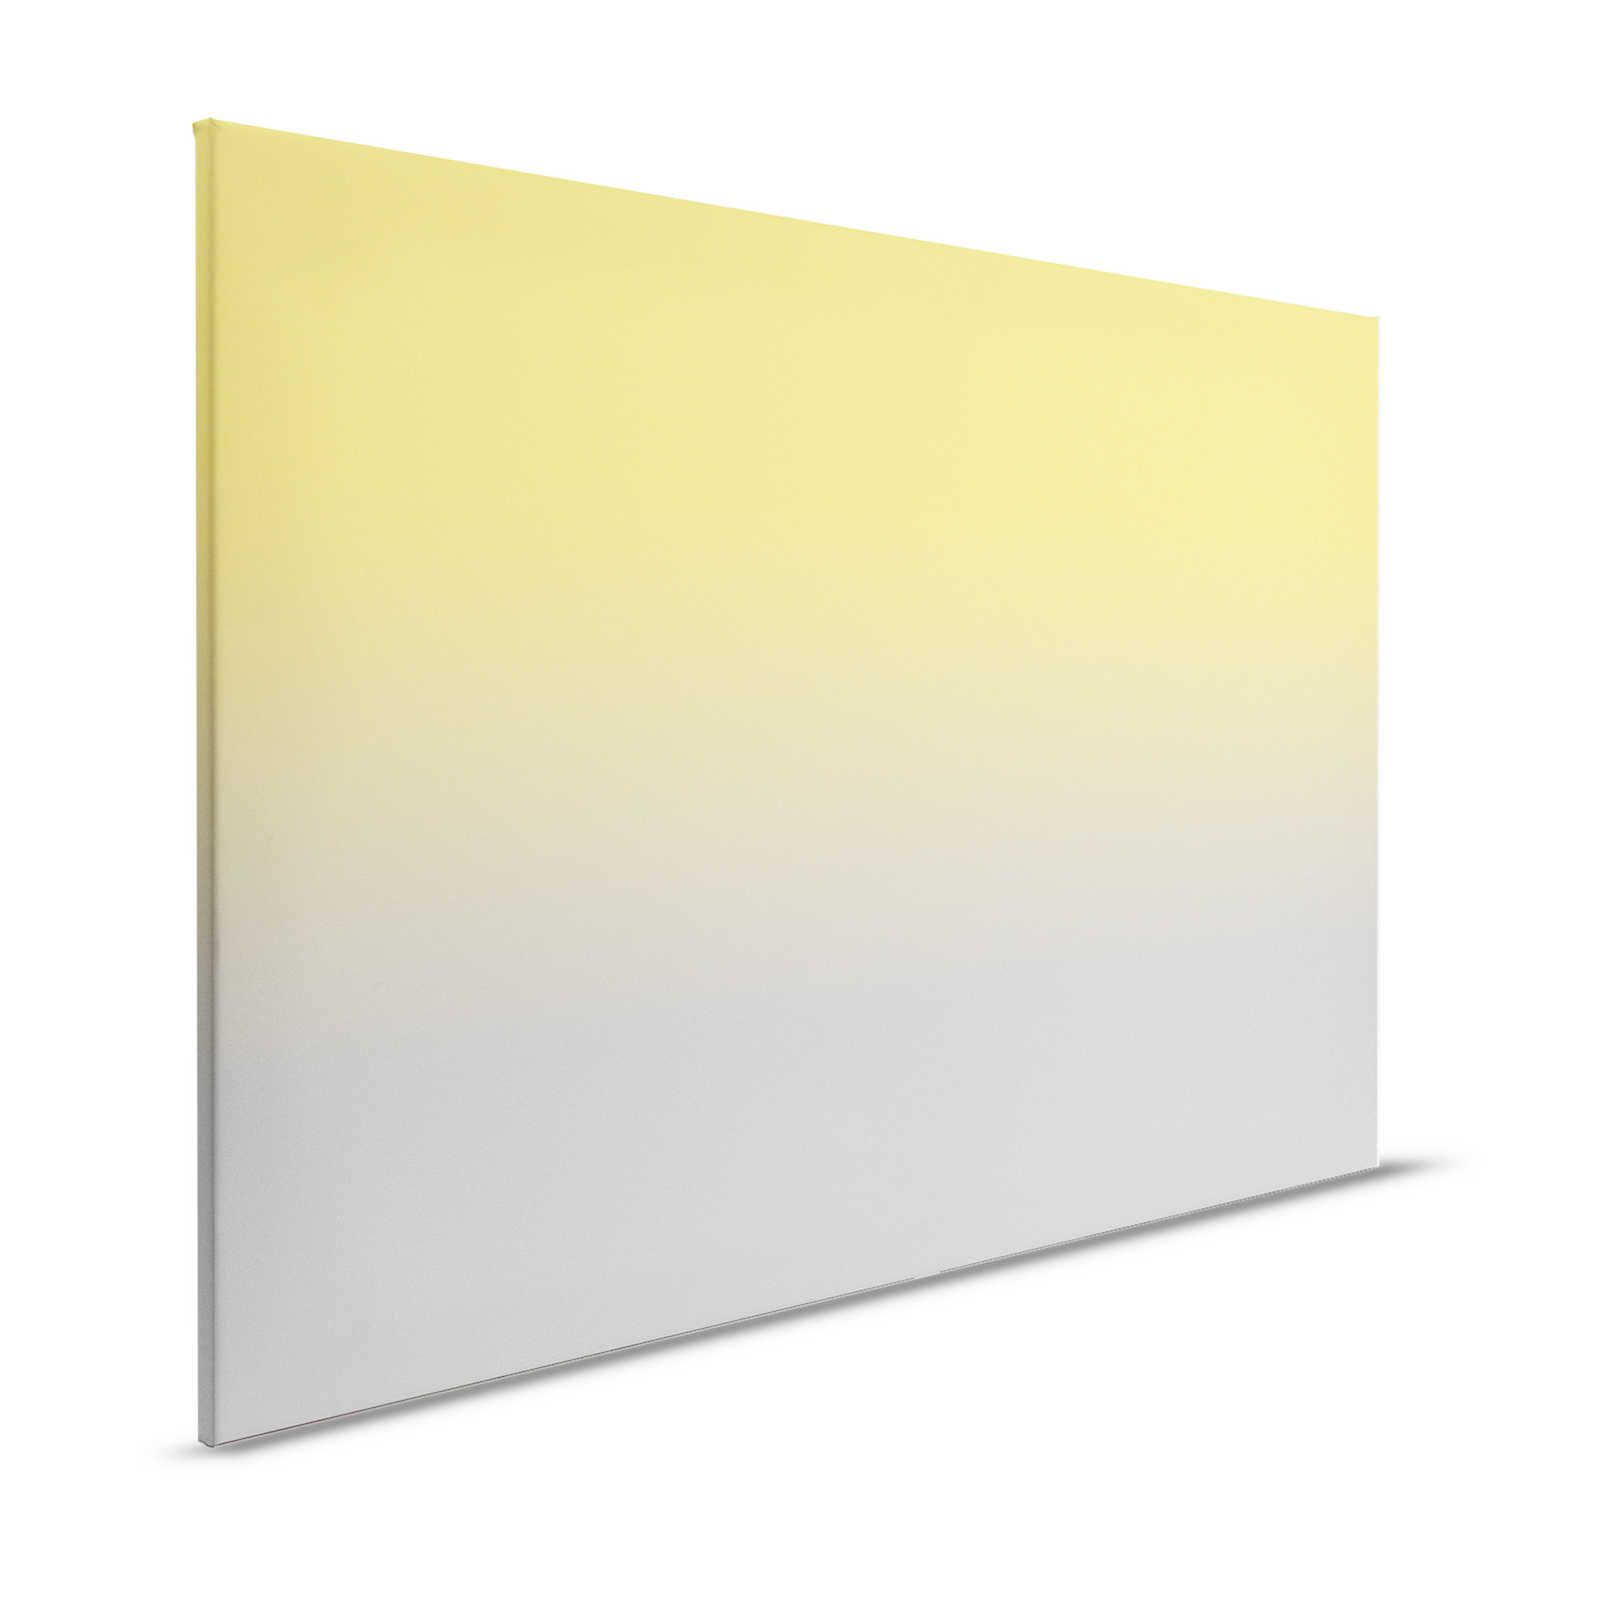 Colour Studio 1 - Tela dipinta con colori di tendenza giallo e grigio effetto Ombre - 1,20 m x 0,80 m
